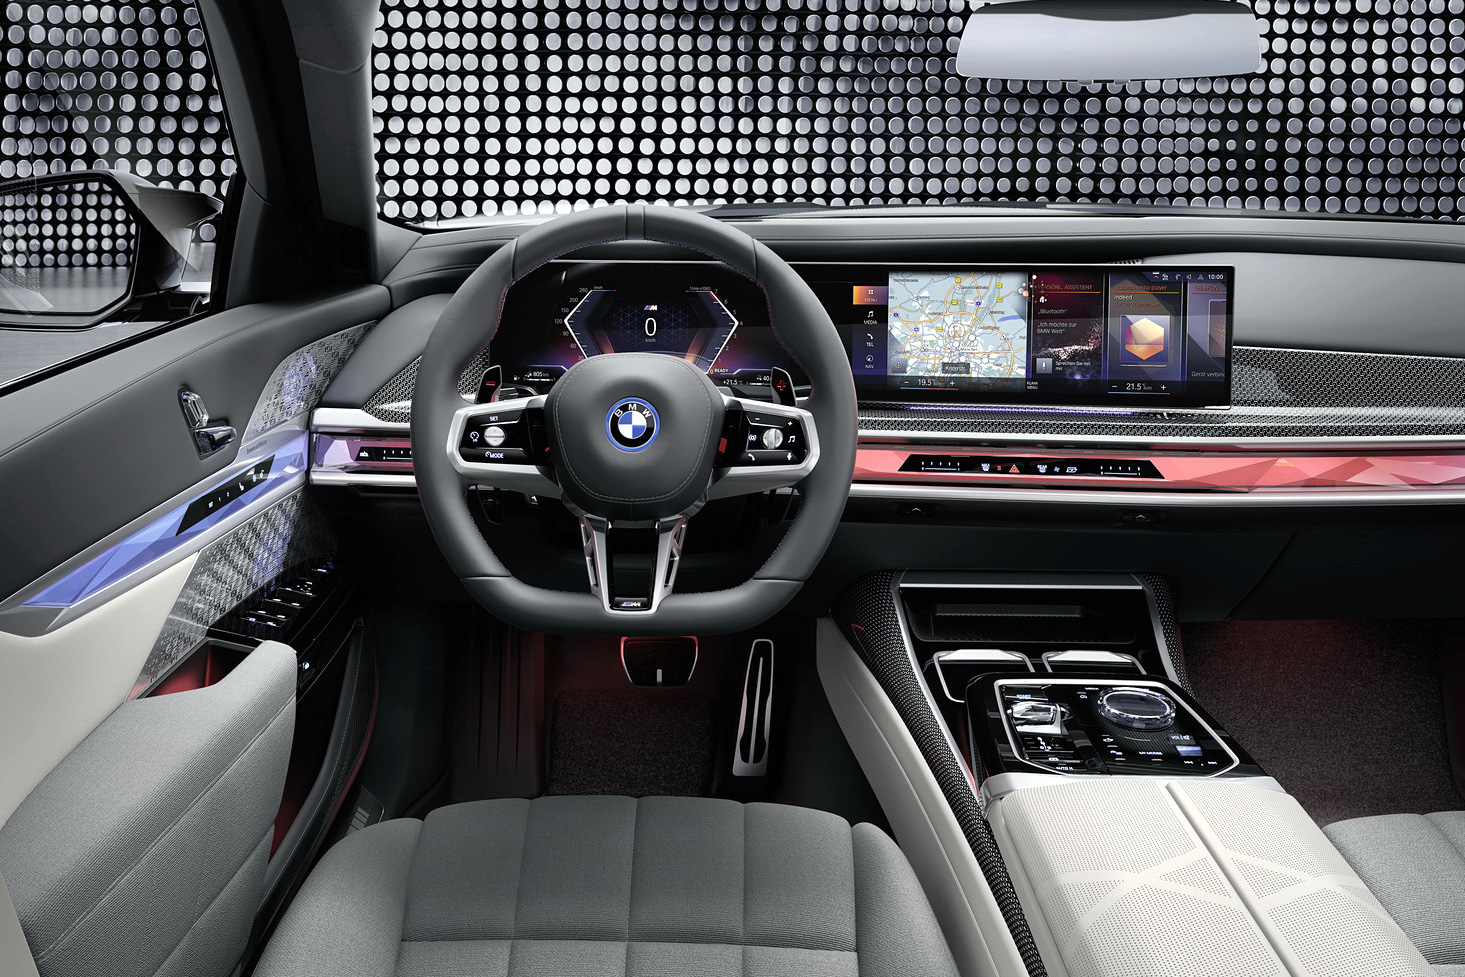 Xe BMW đỉnh cao trong tương lai lại có trang bị tưởng chừng lỗi thời này